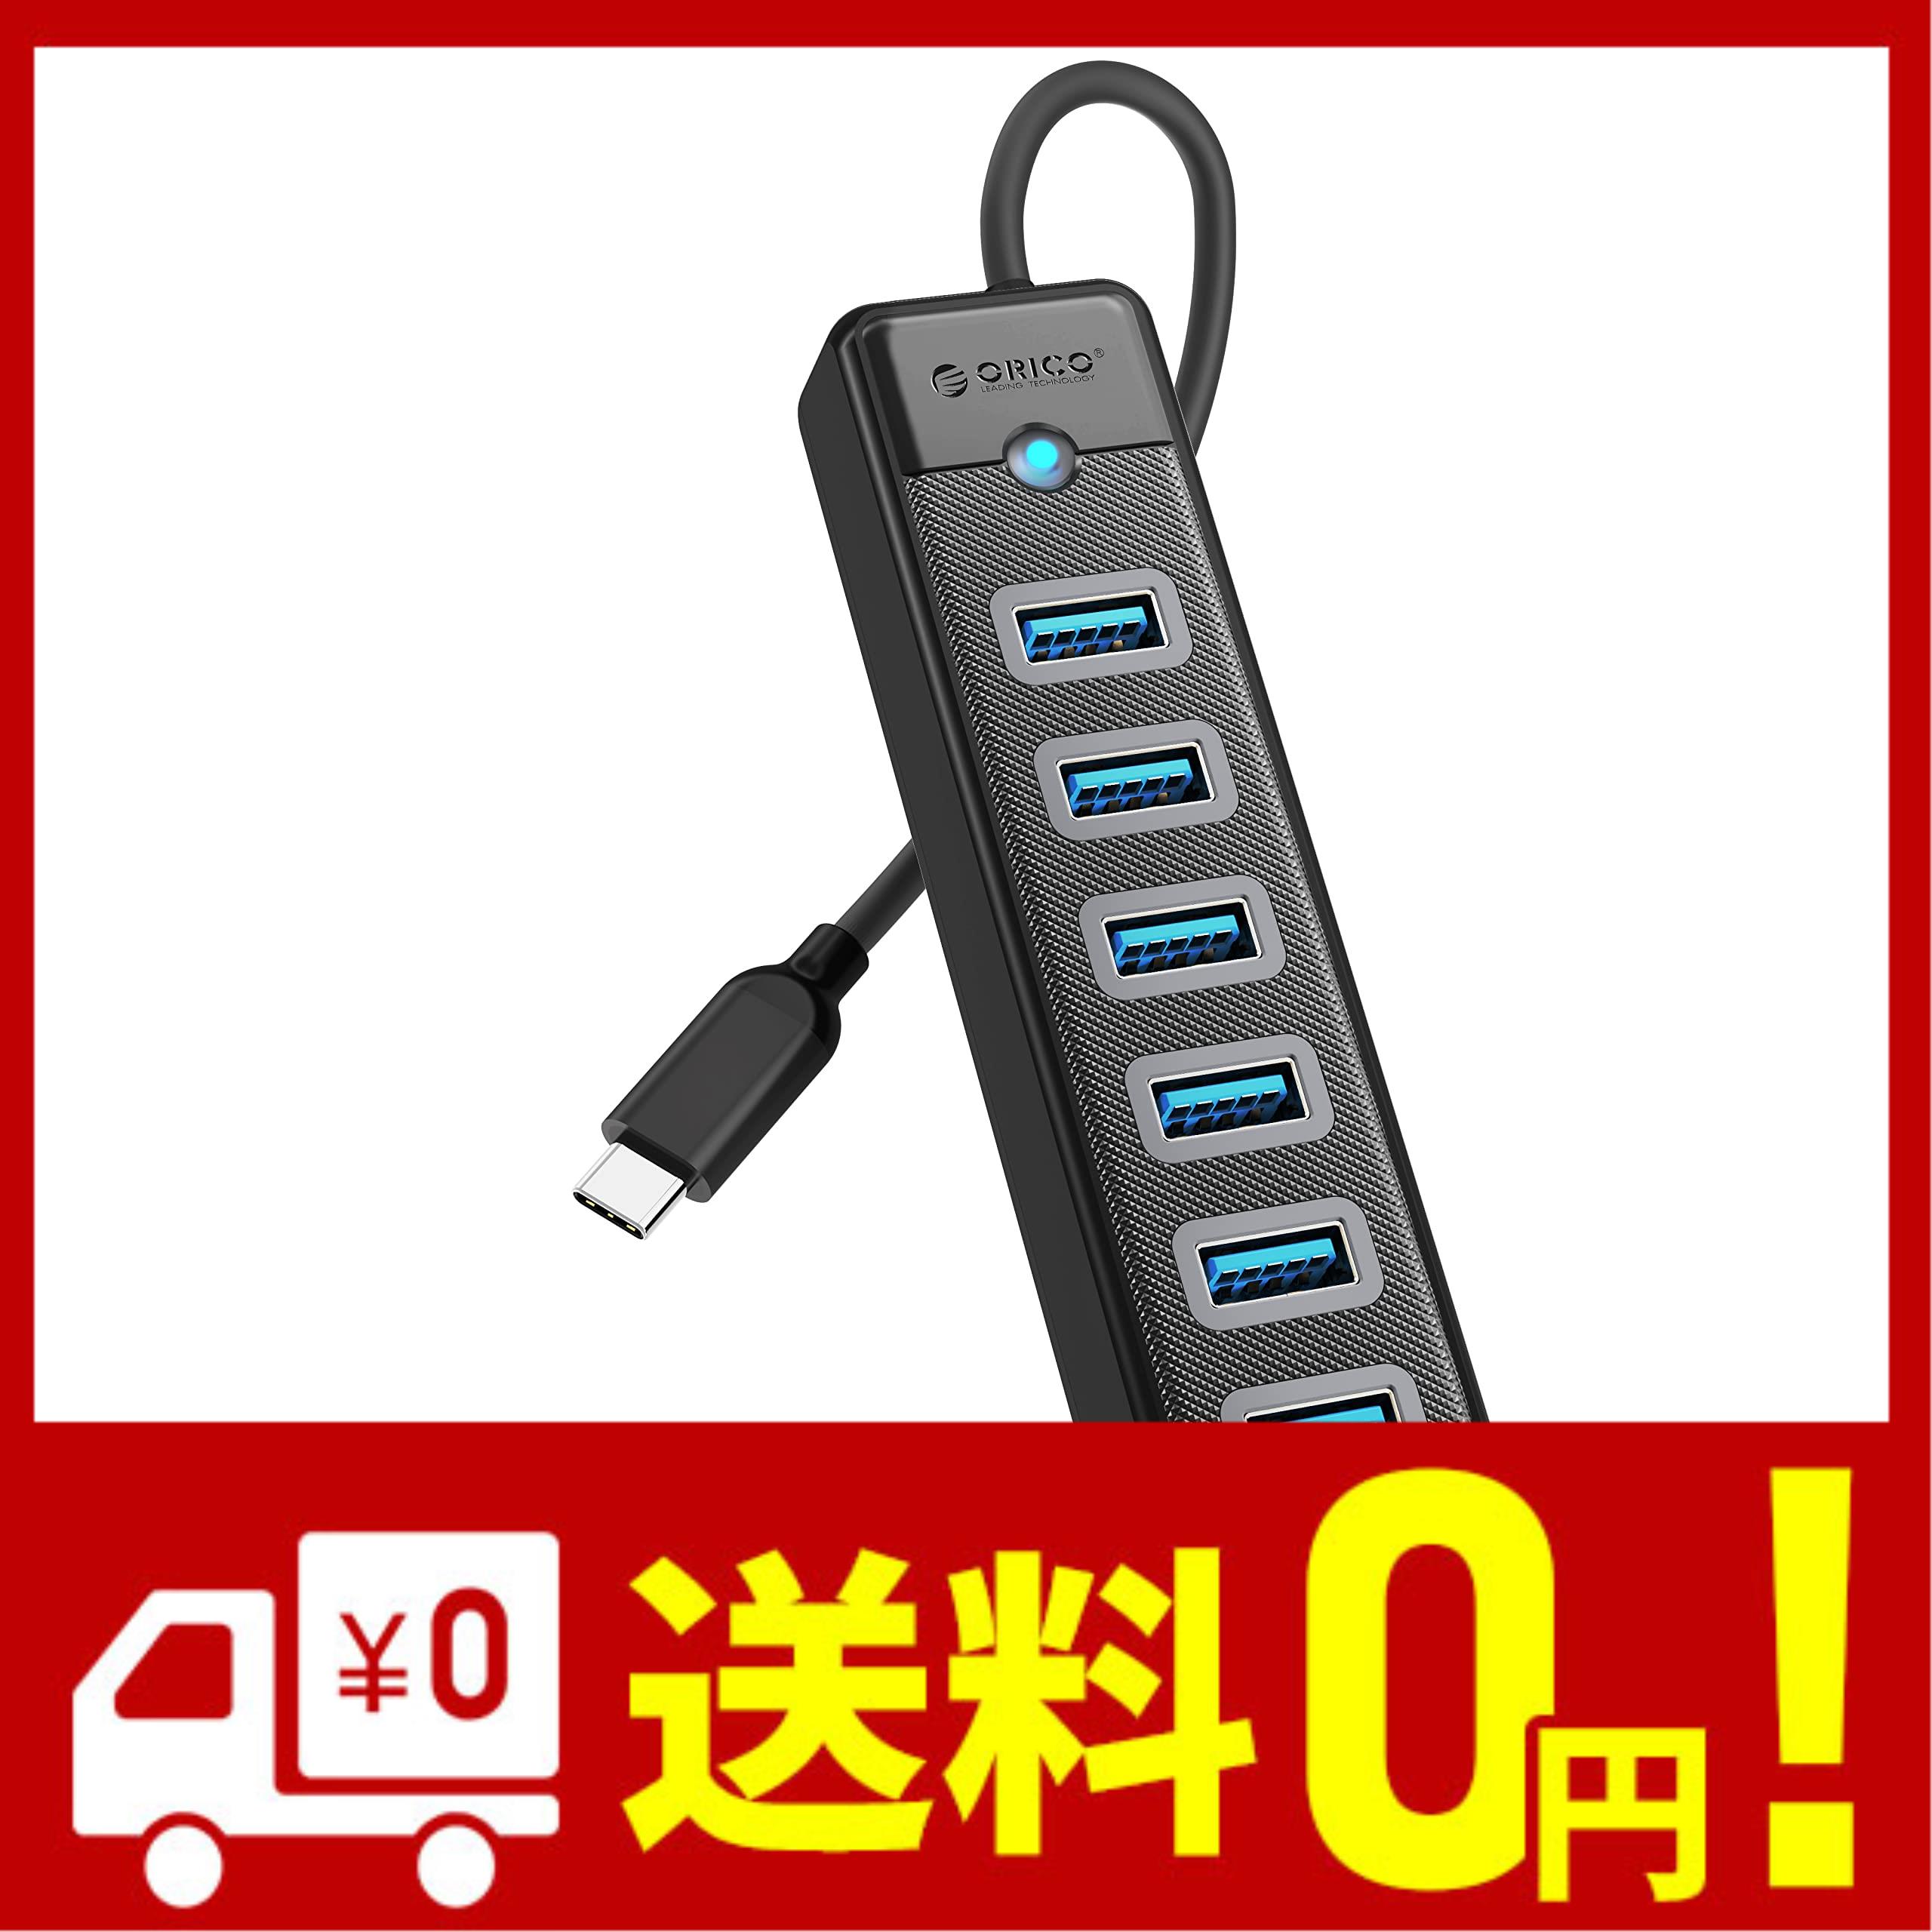 ORICO USB C ハブ 7ポート USBハブ 15CM ケーブル付き 超薄型 USB拡張 5Gbps超高速転送 5V 3A 電源アダプタポート付き ノートパソコン Ma